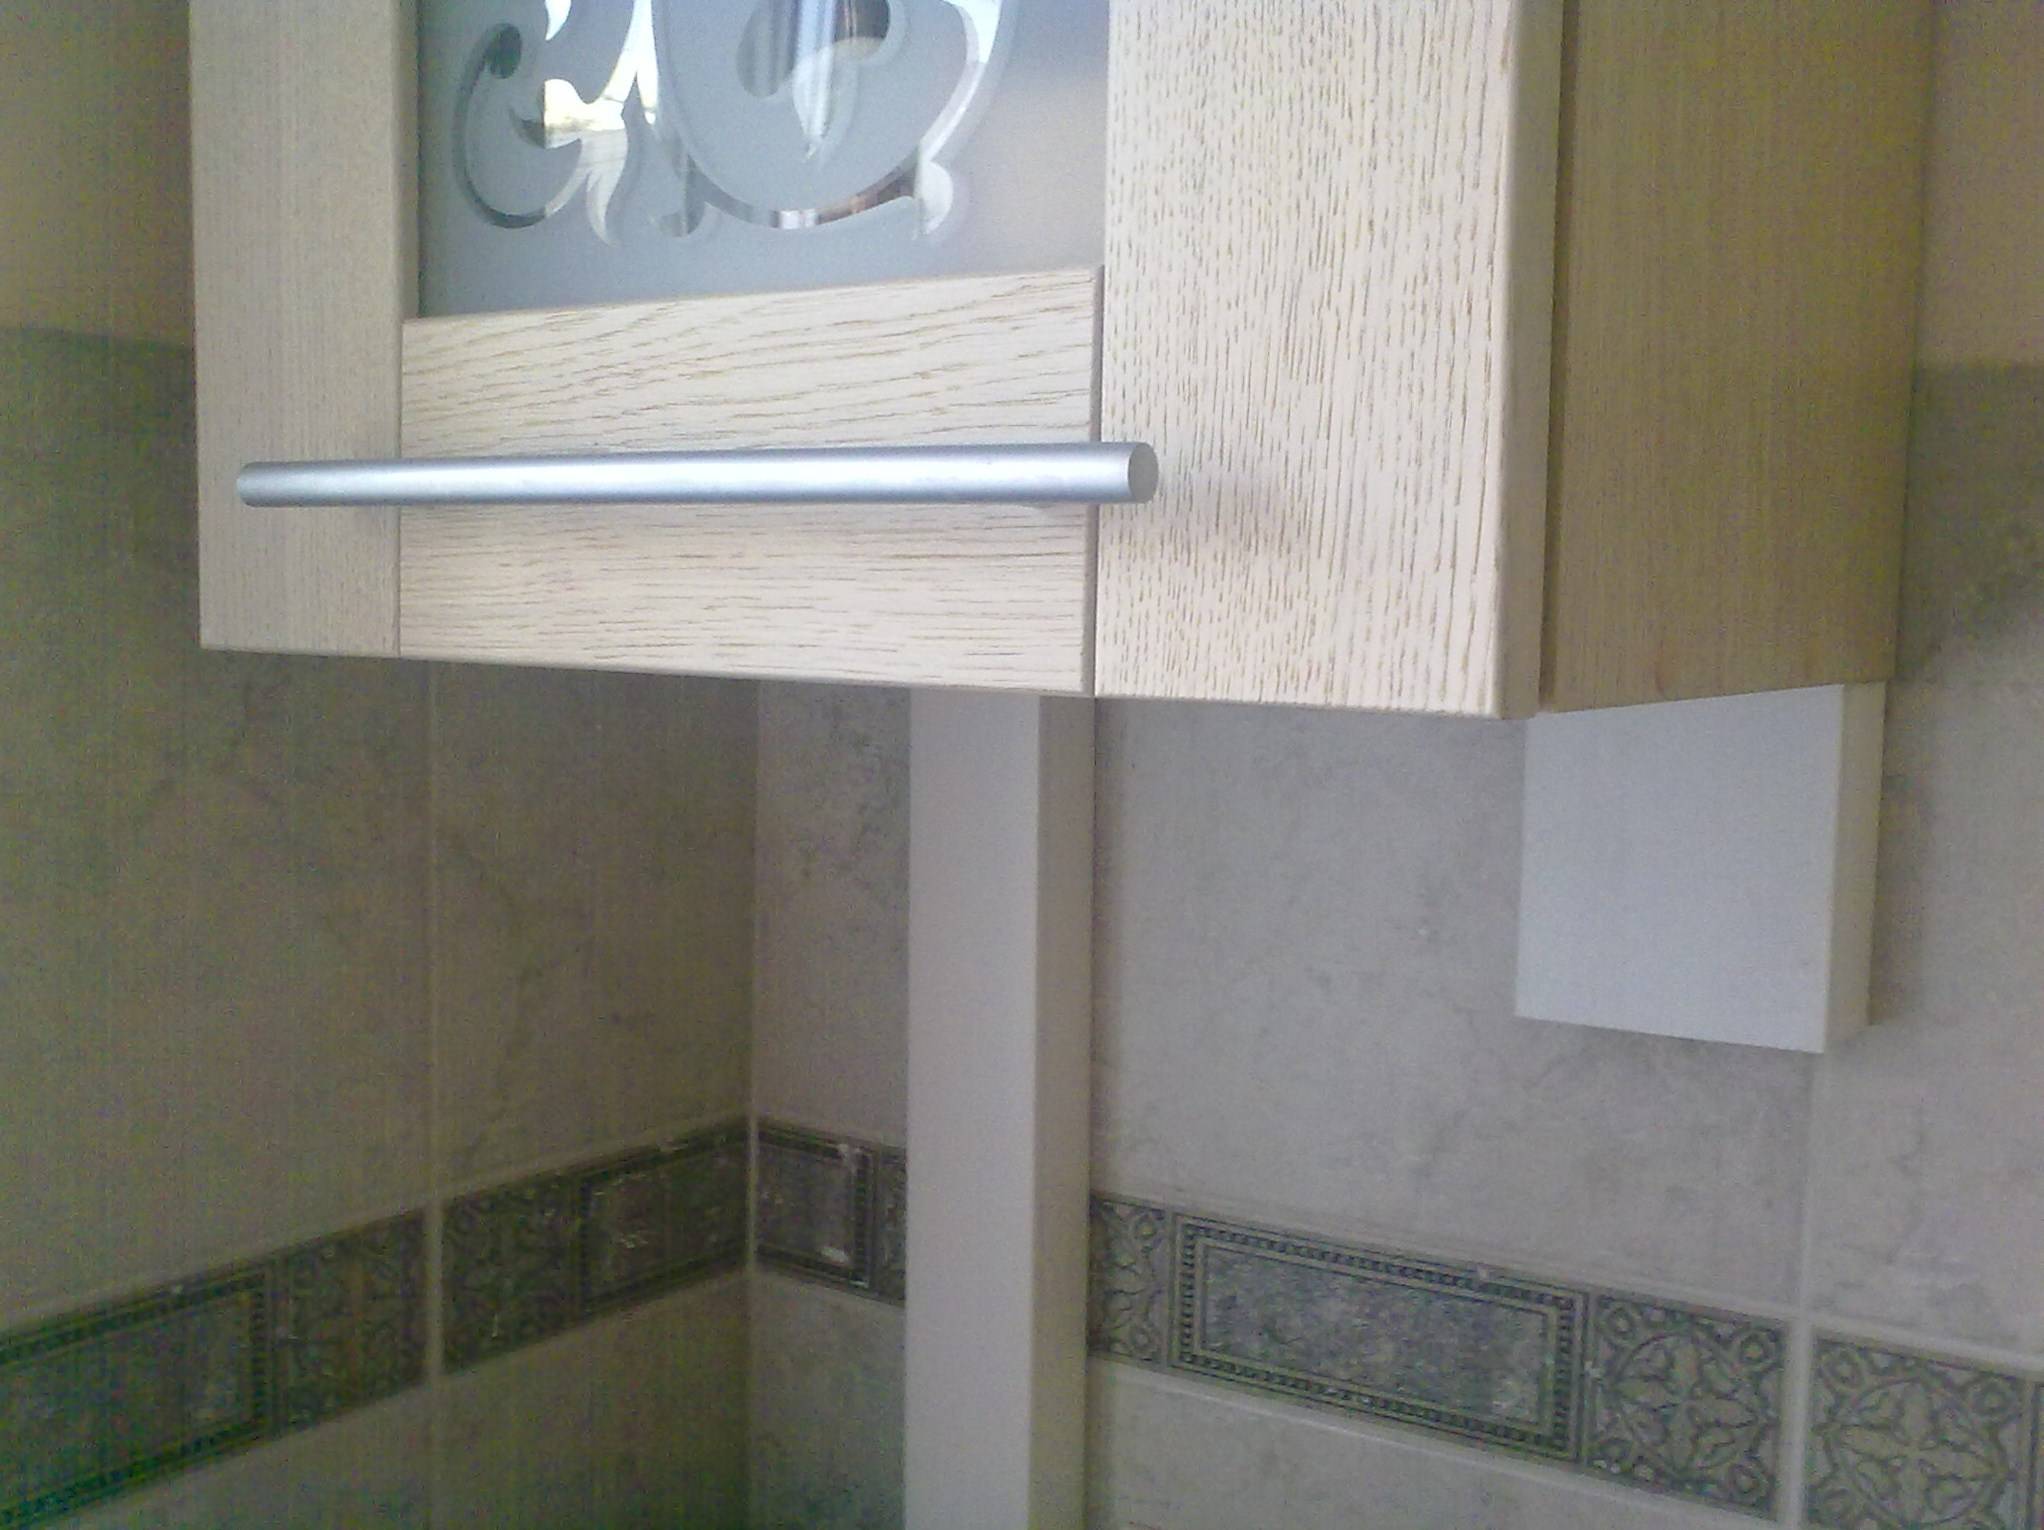 Как спрятать газовые трубы на кухне: фото удачных способов скрыть газопровод - квартира, дом, дача - 1 мая - 43655874595 - медиаплатформа миртесен